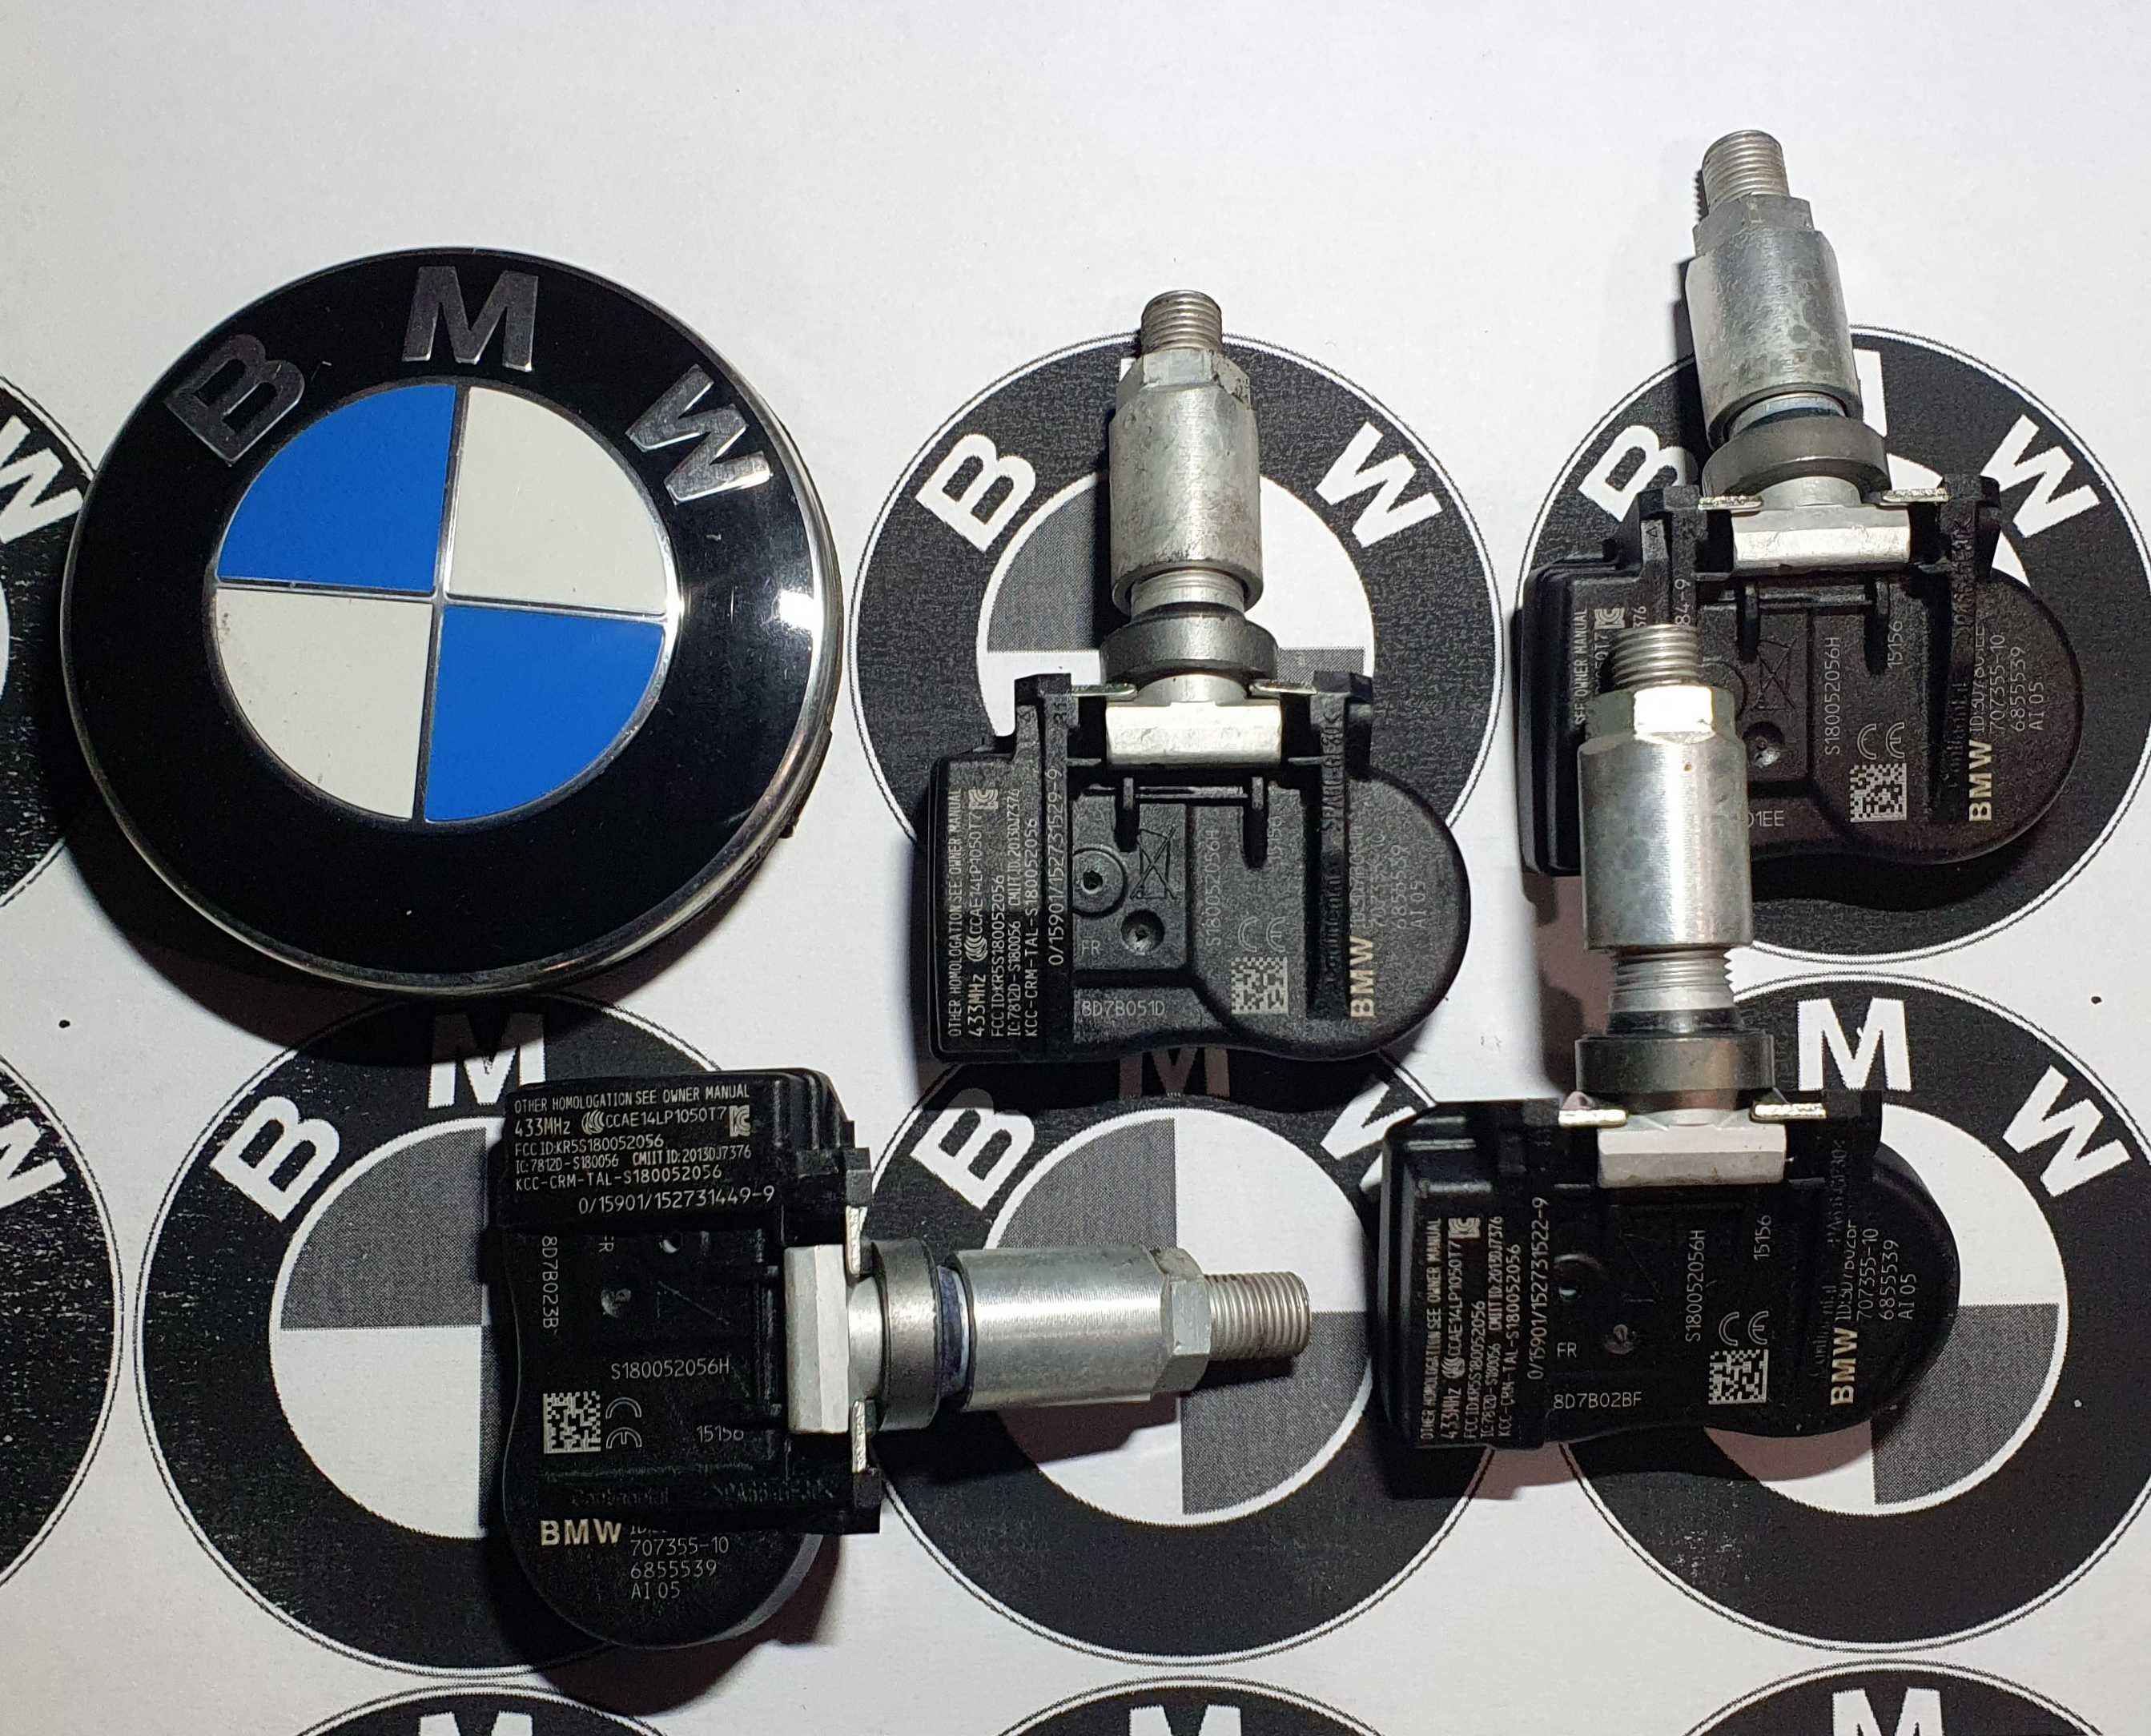 TPMS BMW Оригінал MINI Датчики Давления Шин S180052056 3 i3 X5 F30 F15